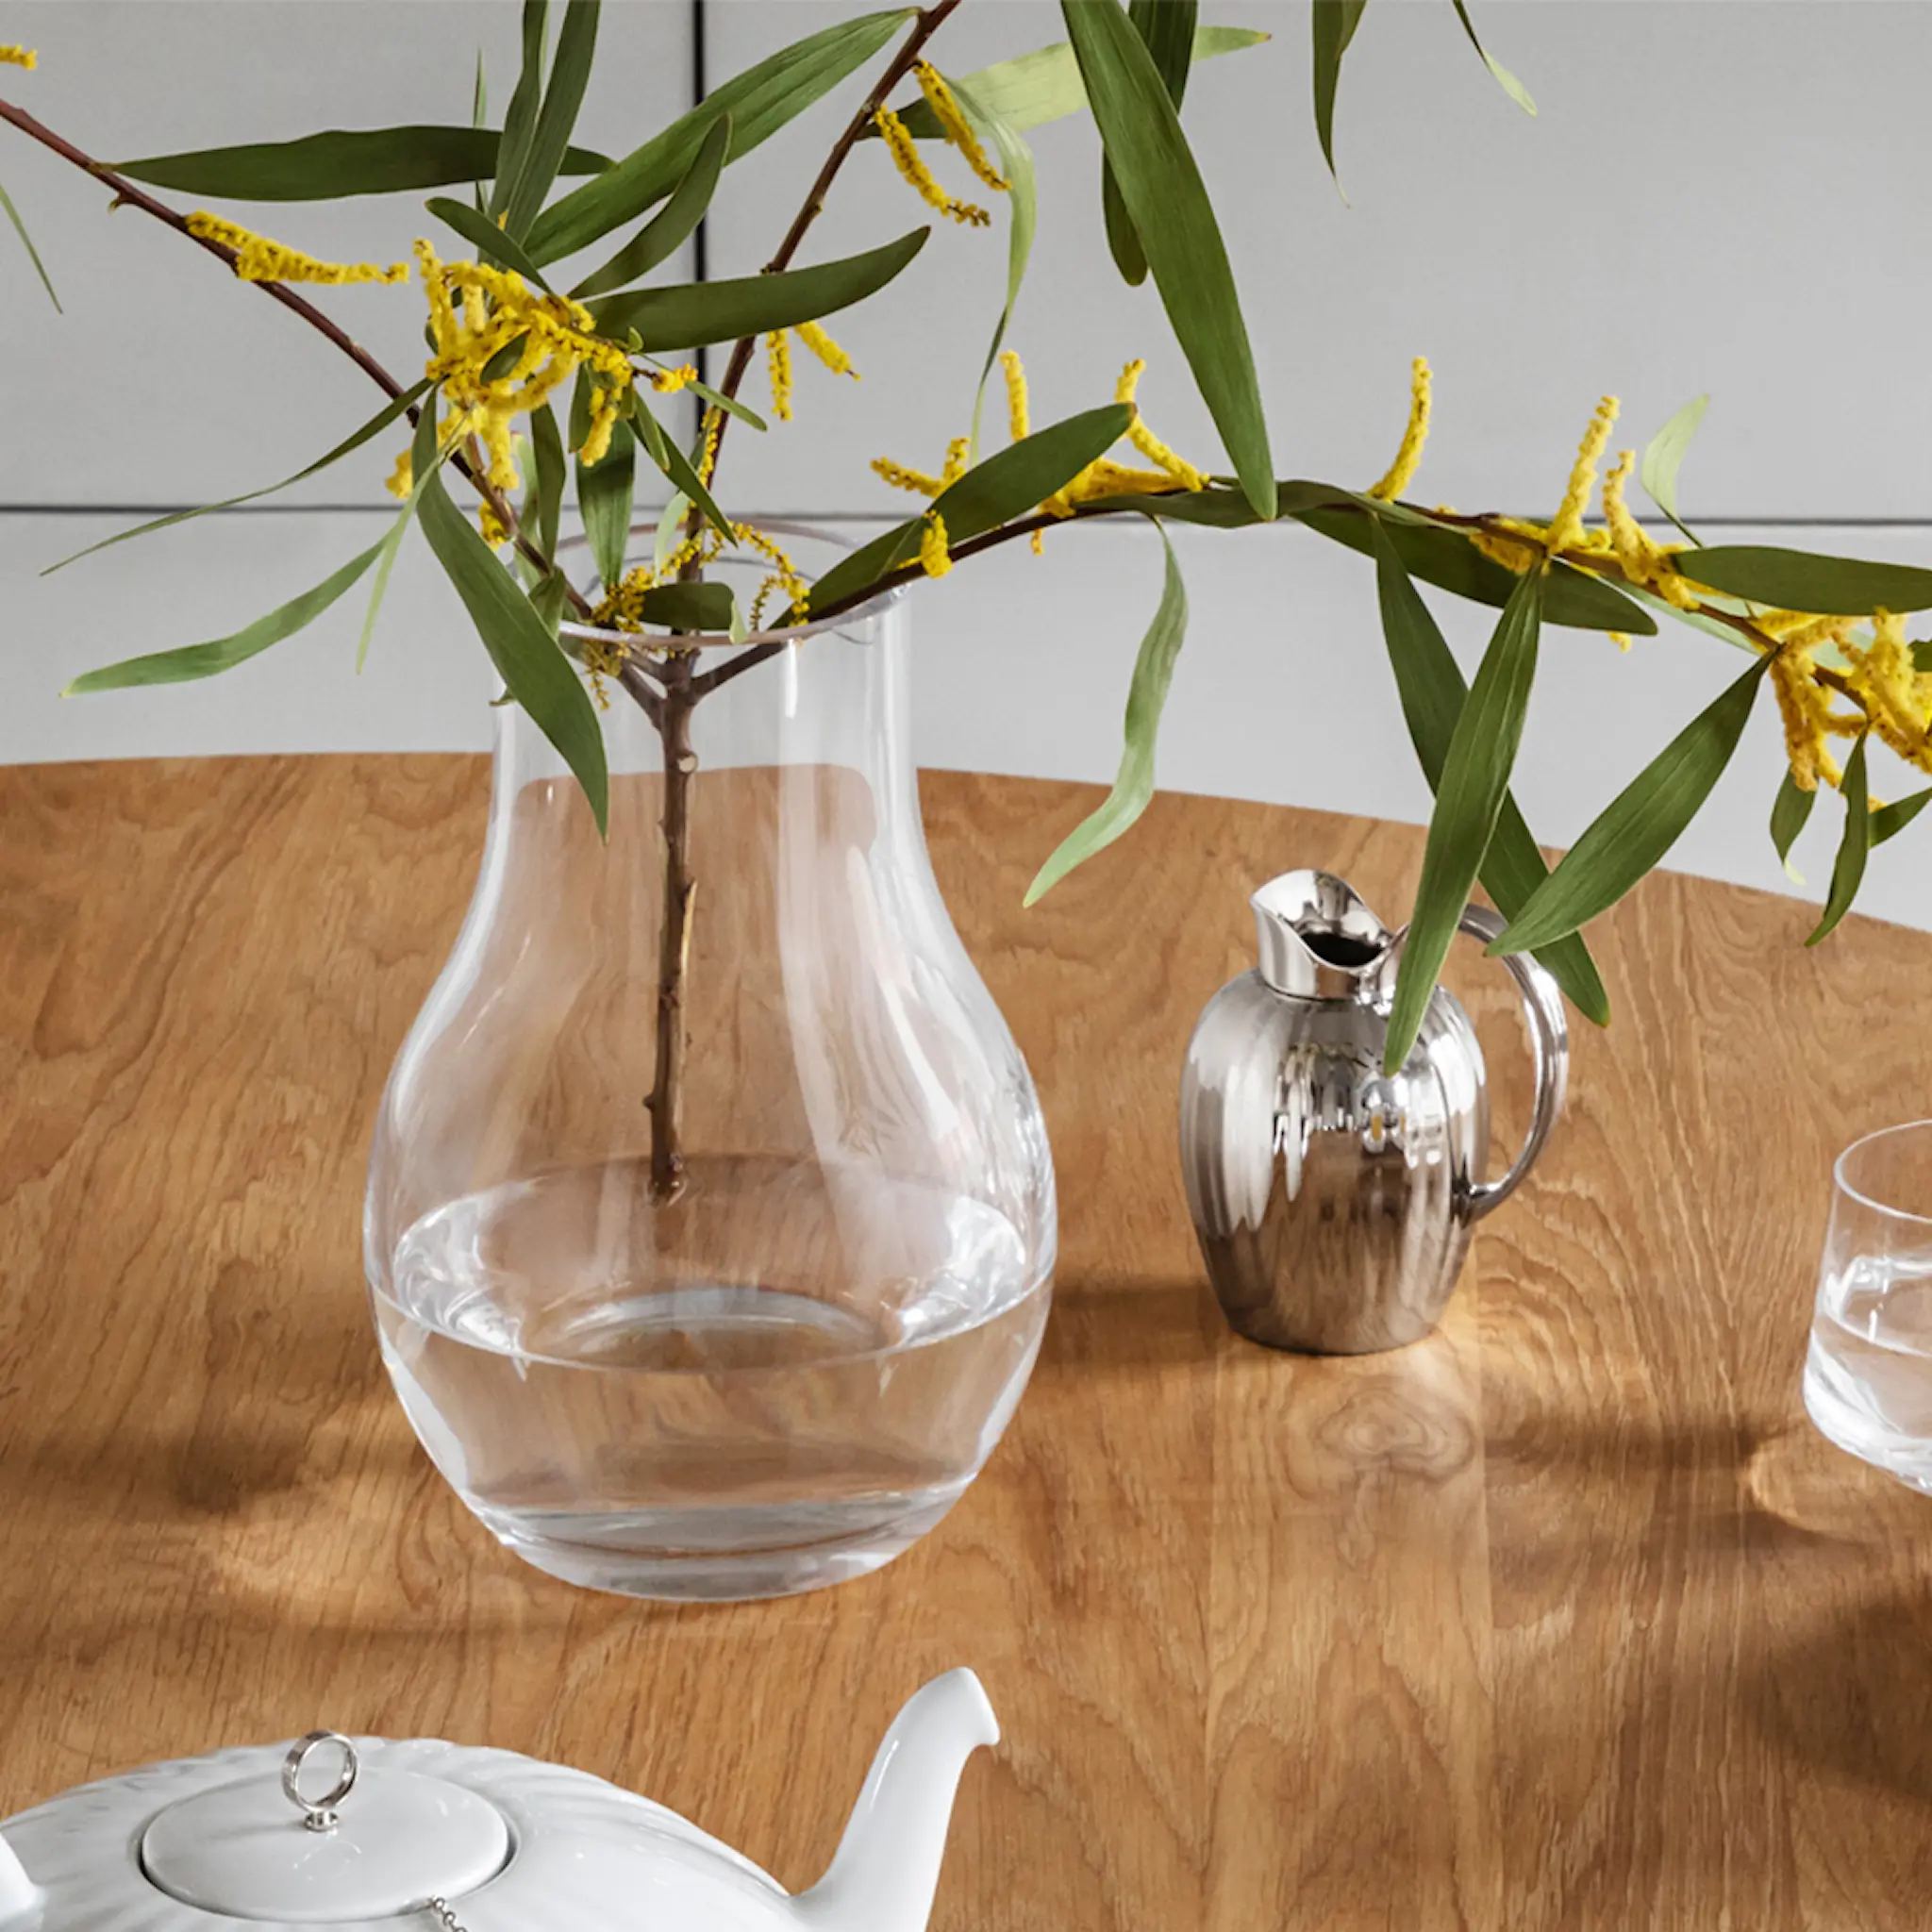 Georg Jensen Cafu vase glass 30 cm klar